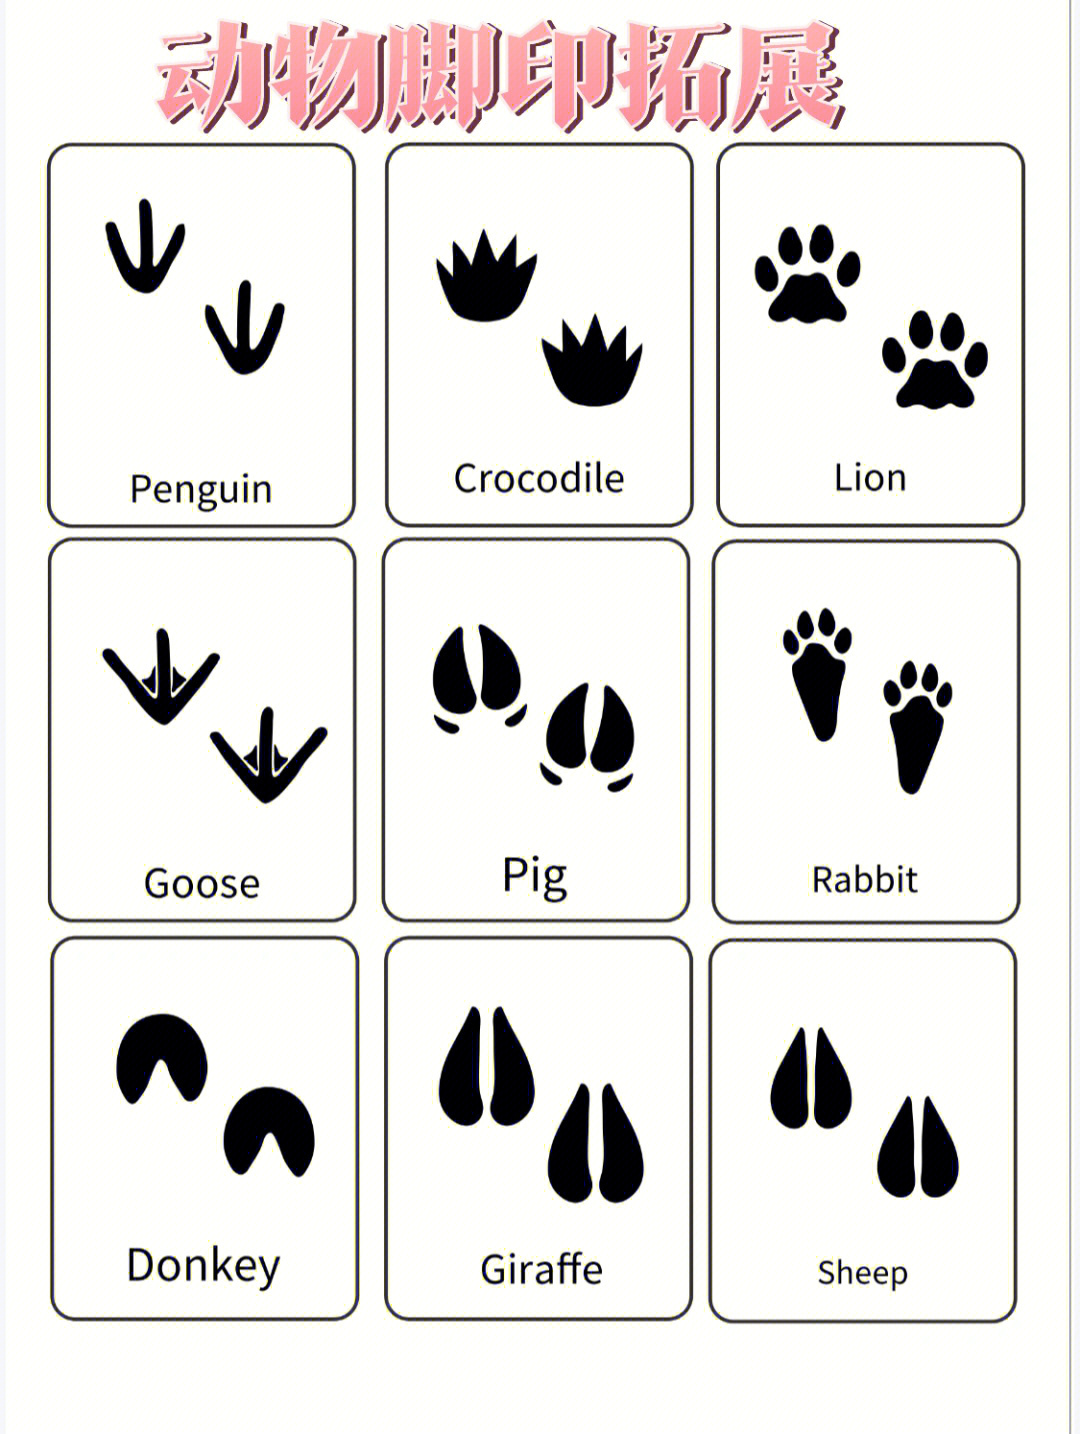 十二生肖动物脚印图图片